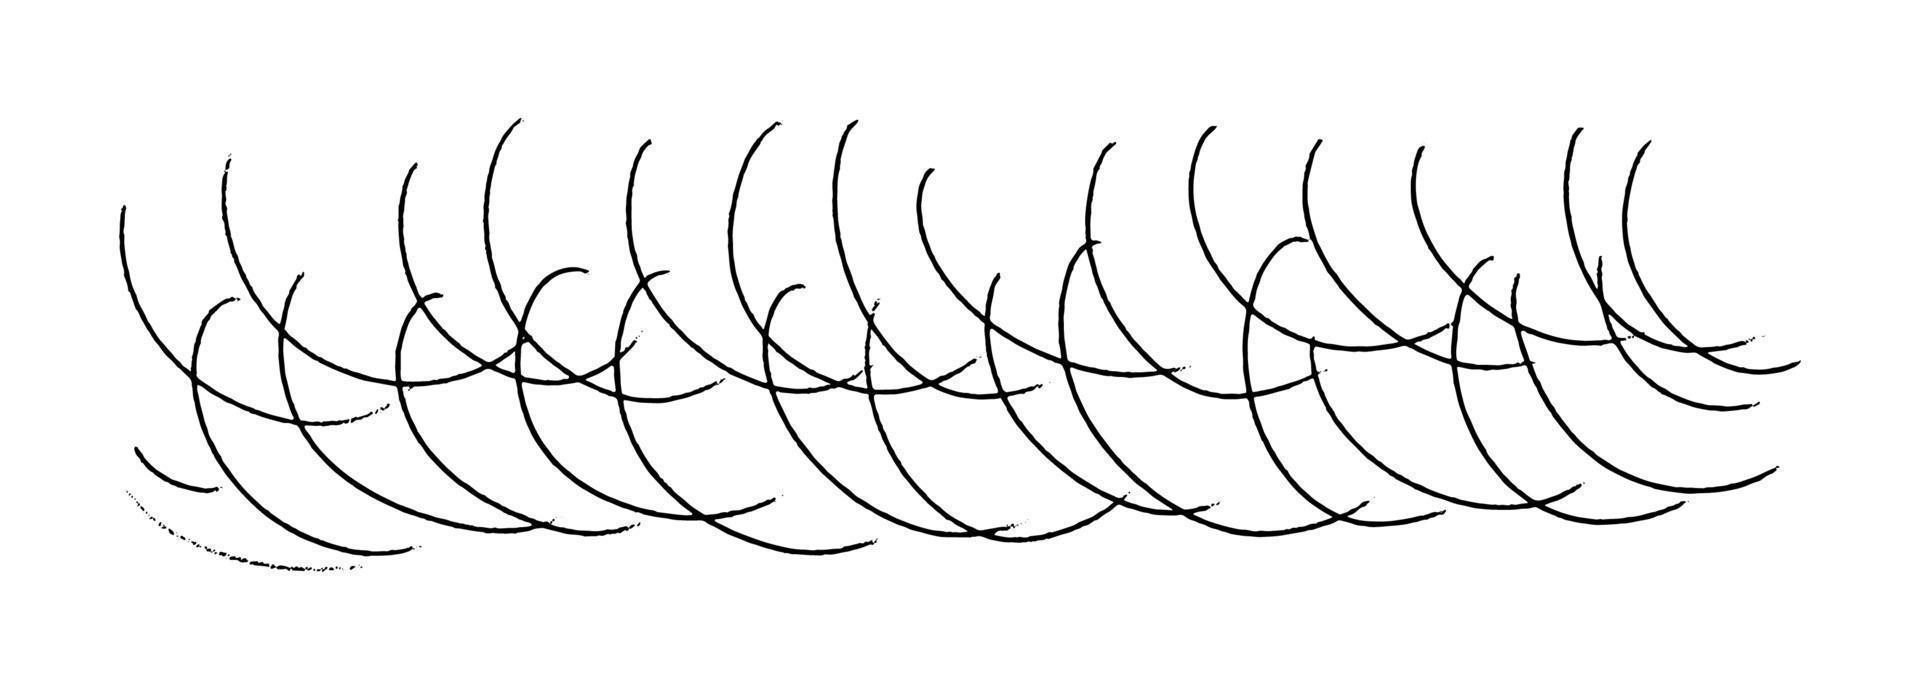 vektor illustration av böjd rader. ritad för hand välvd klotter slag. horisontell bakgrund penna textur isolerat på vit.